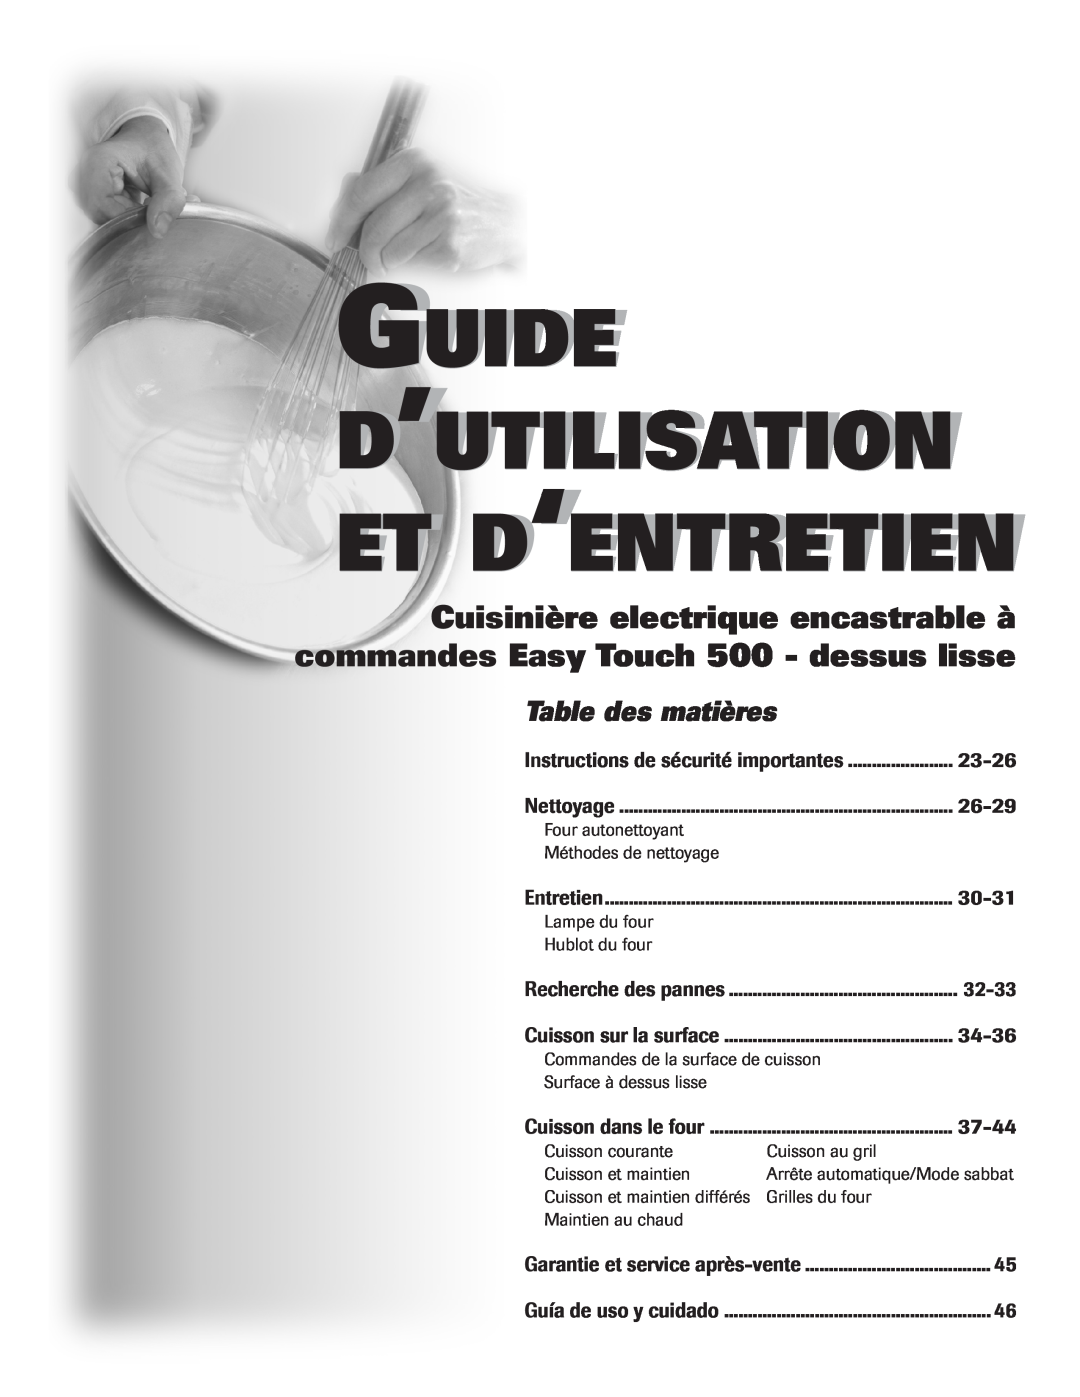 Maytag 500 Guide D’Utilisation Et D‘Entretien, Table des matières, 23-26, 26-29, 30-31, 32-33, 34-36, 37-44 